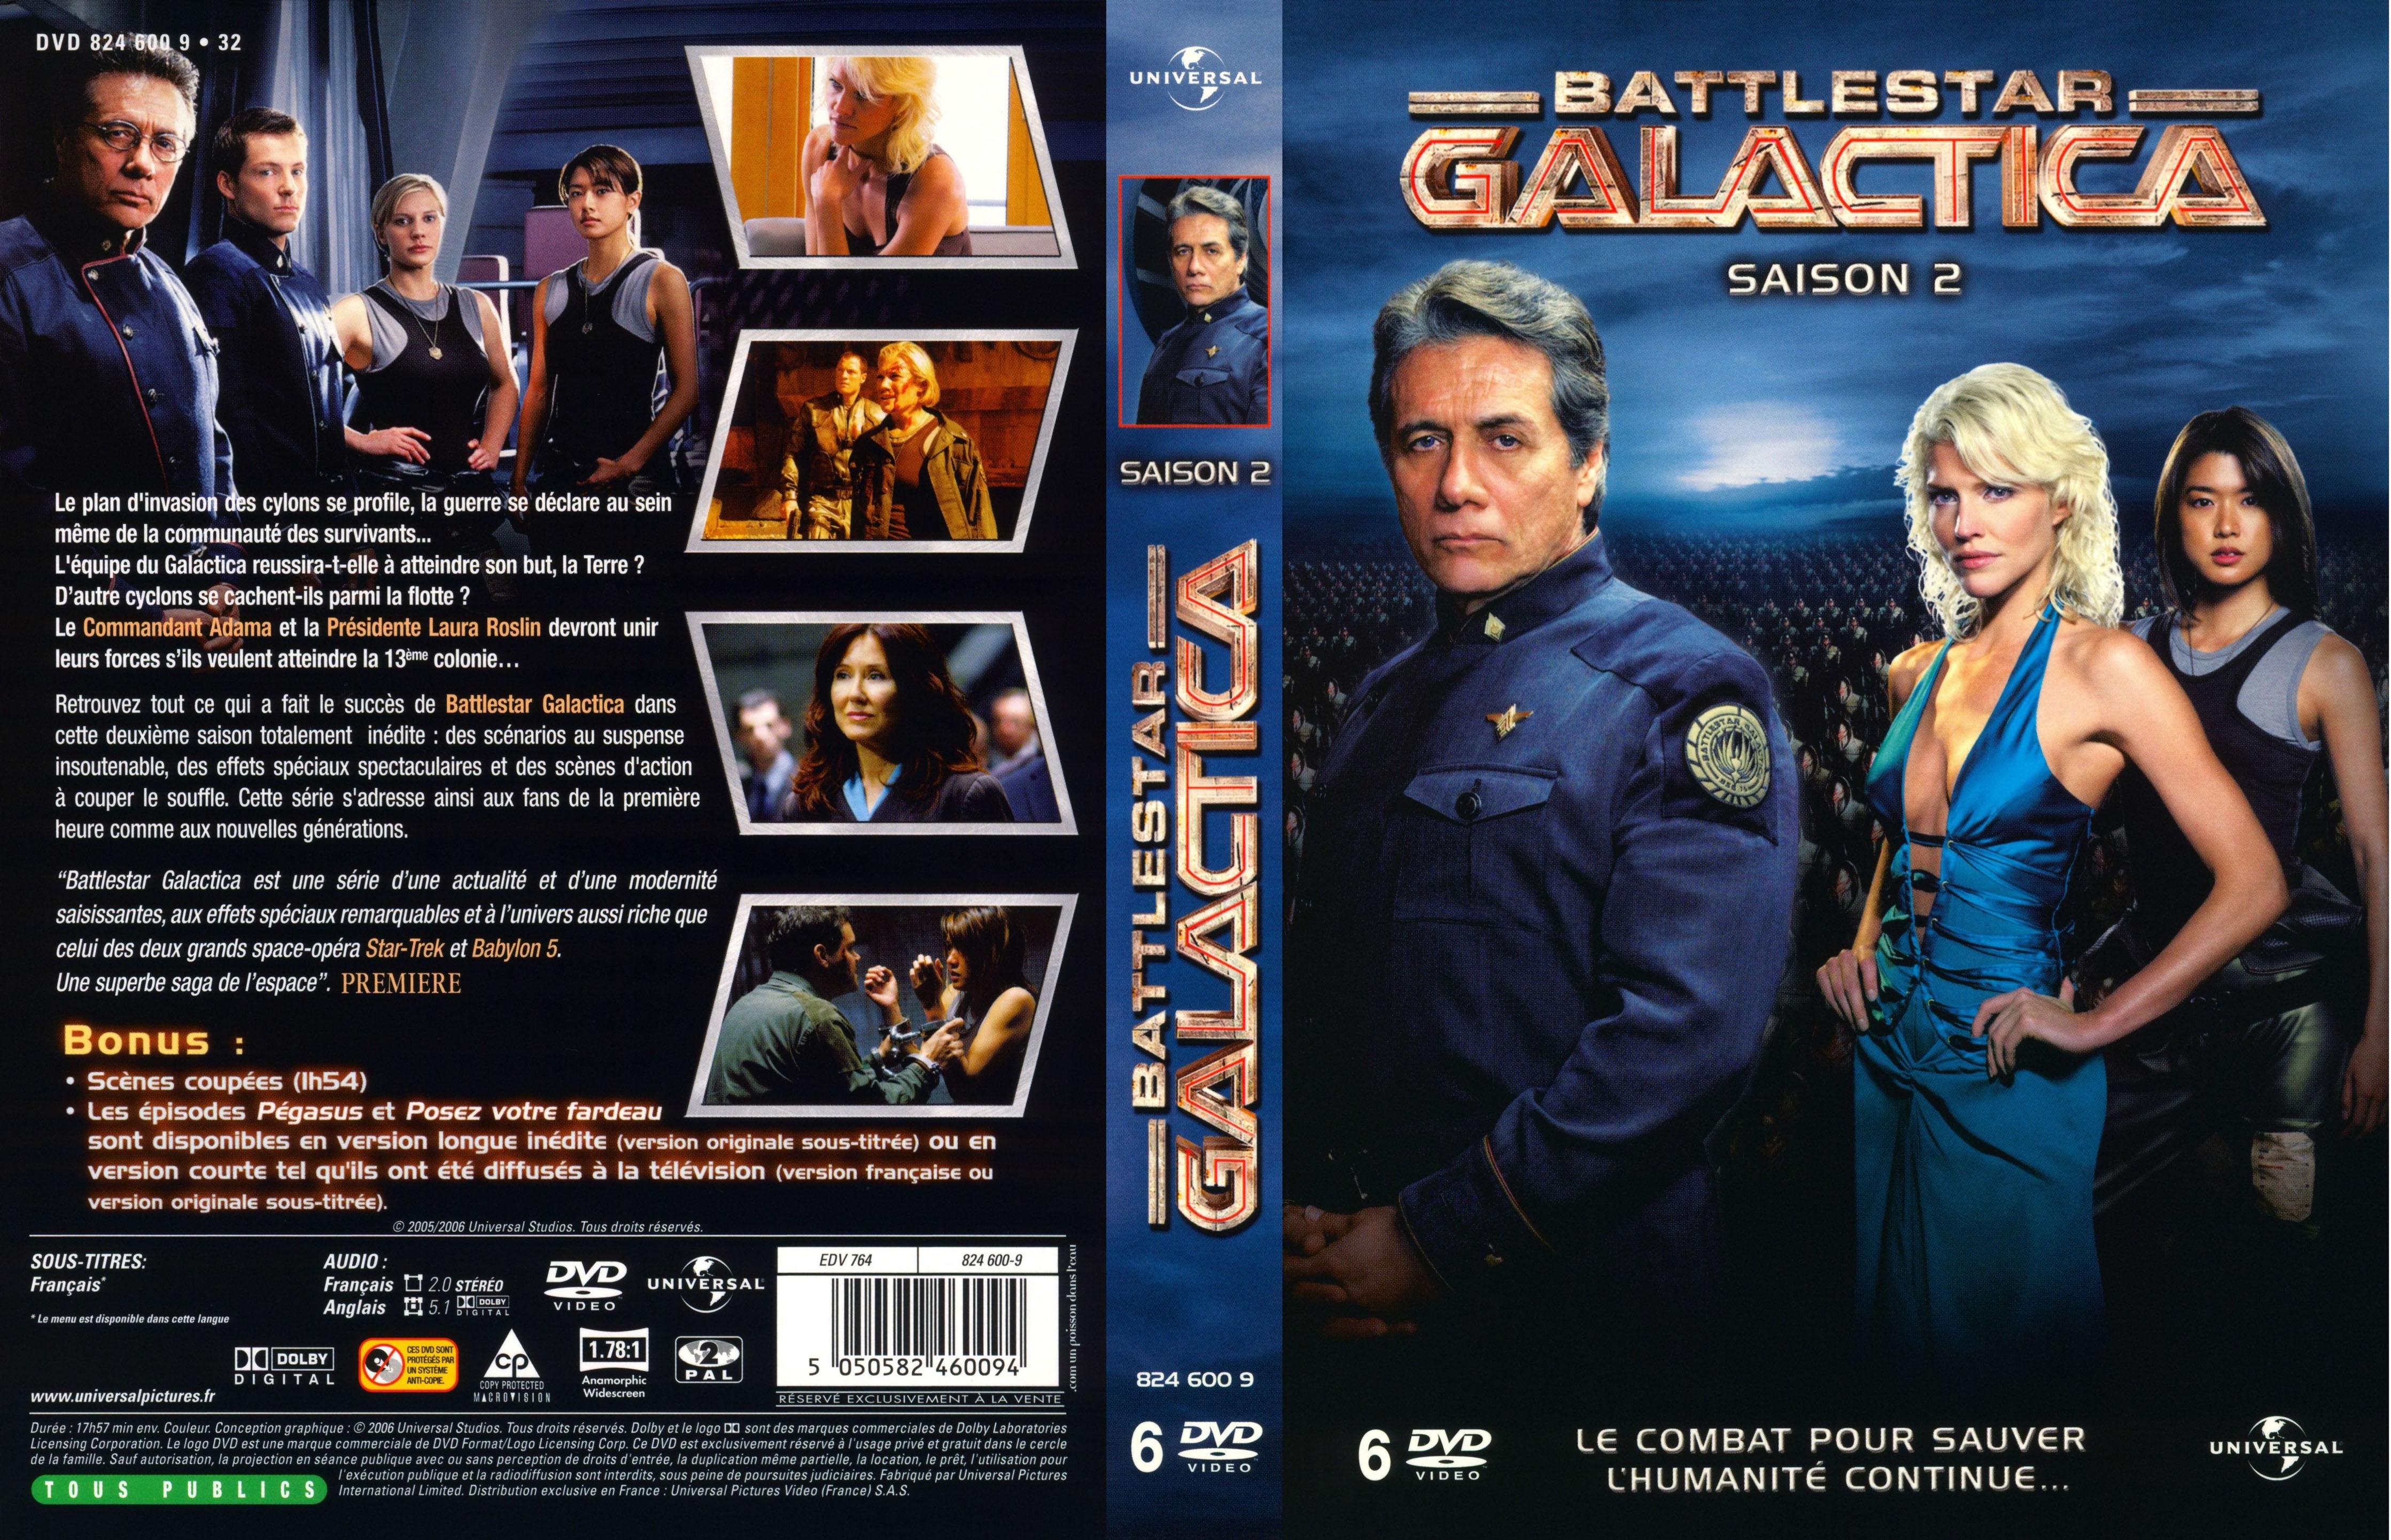 Jaquette DVD Battlestar Galactica Saison 2 COFFRET